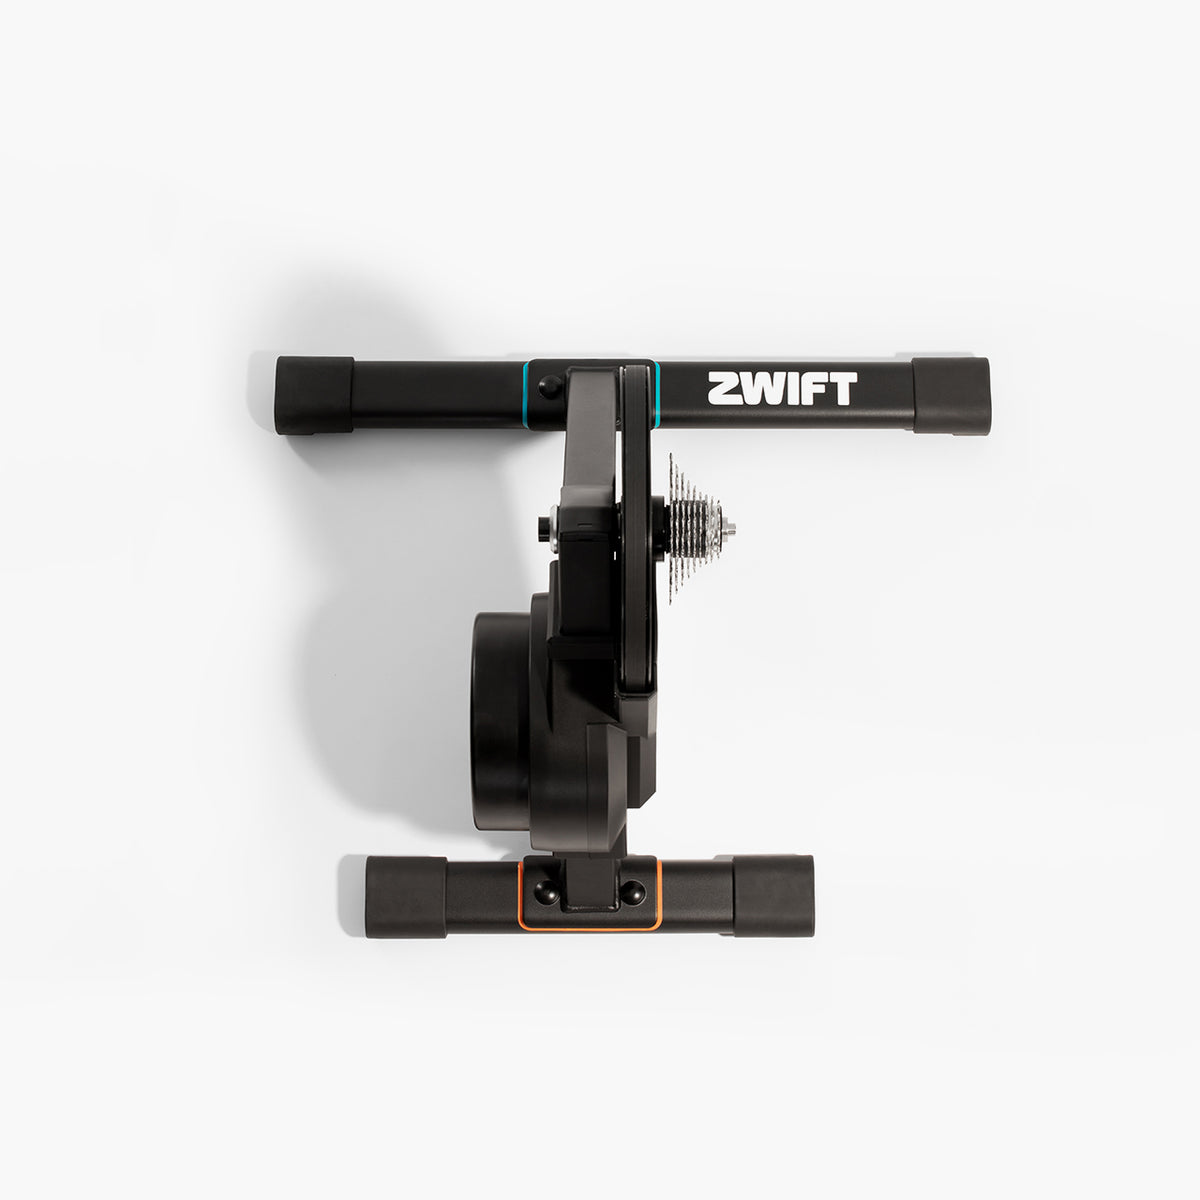 Rodillo inteligente Zwift Hub con cassette de 9 velocidades